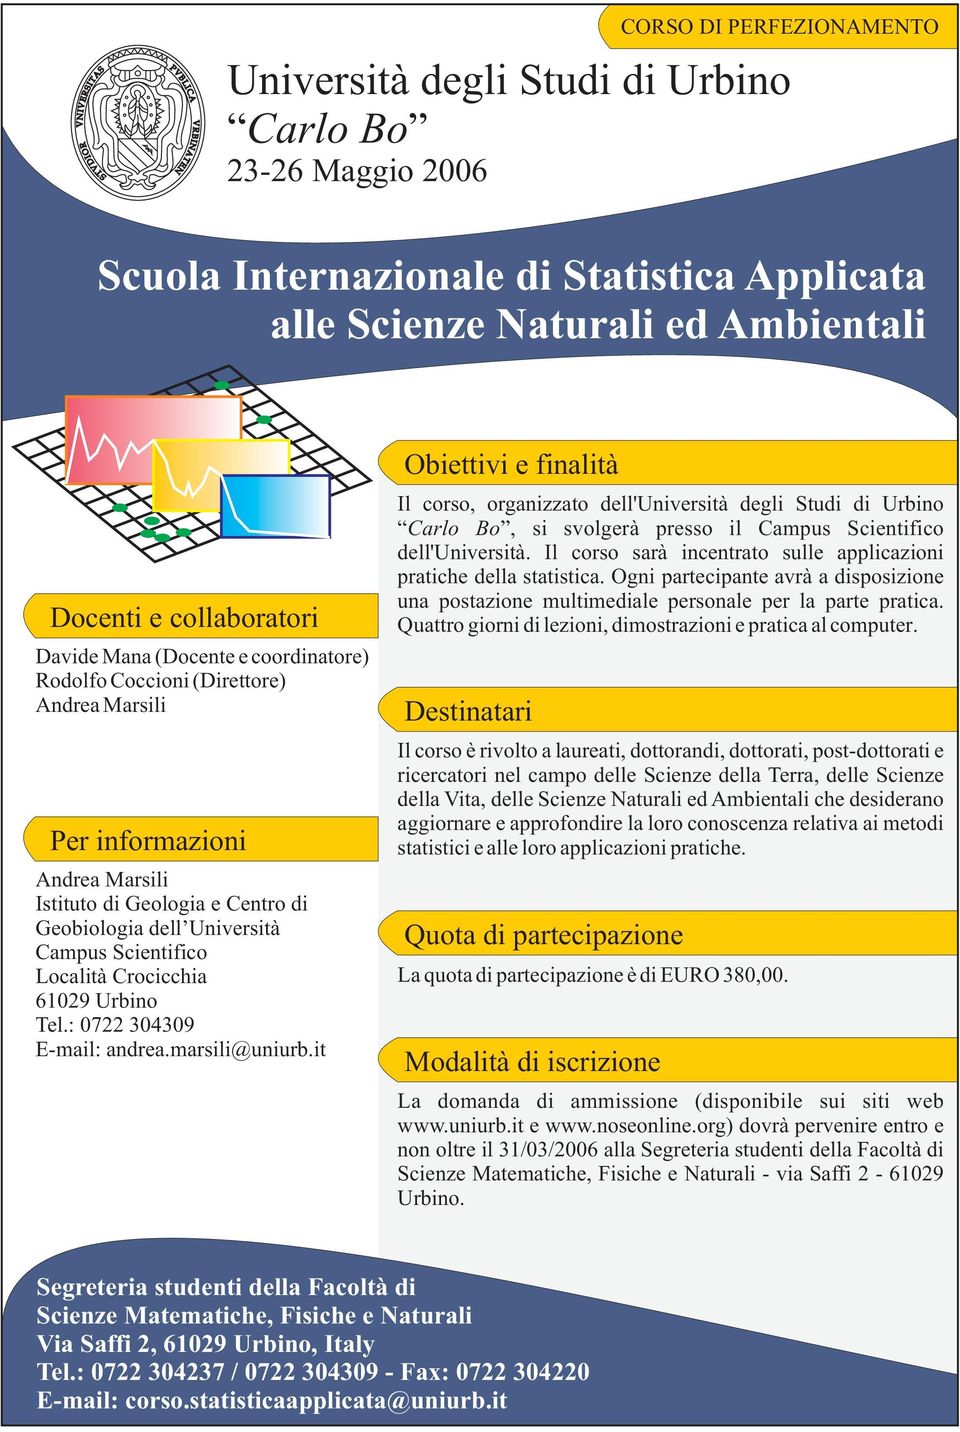 Università Campus Scientifico Località Crocicchia 61029 Urbino Tel.: 0722 0409 E-mail: andrea.marsili@uniurb.